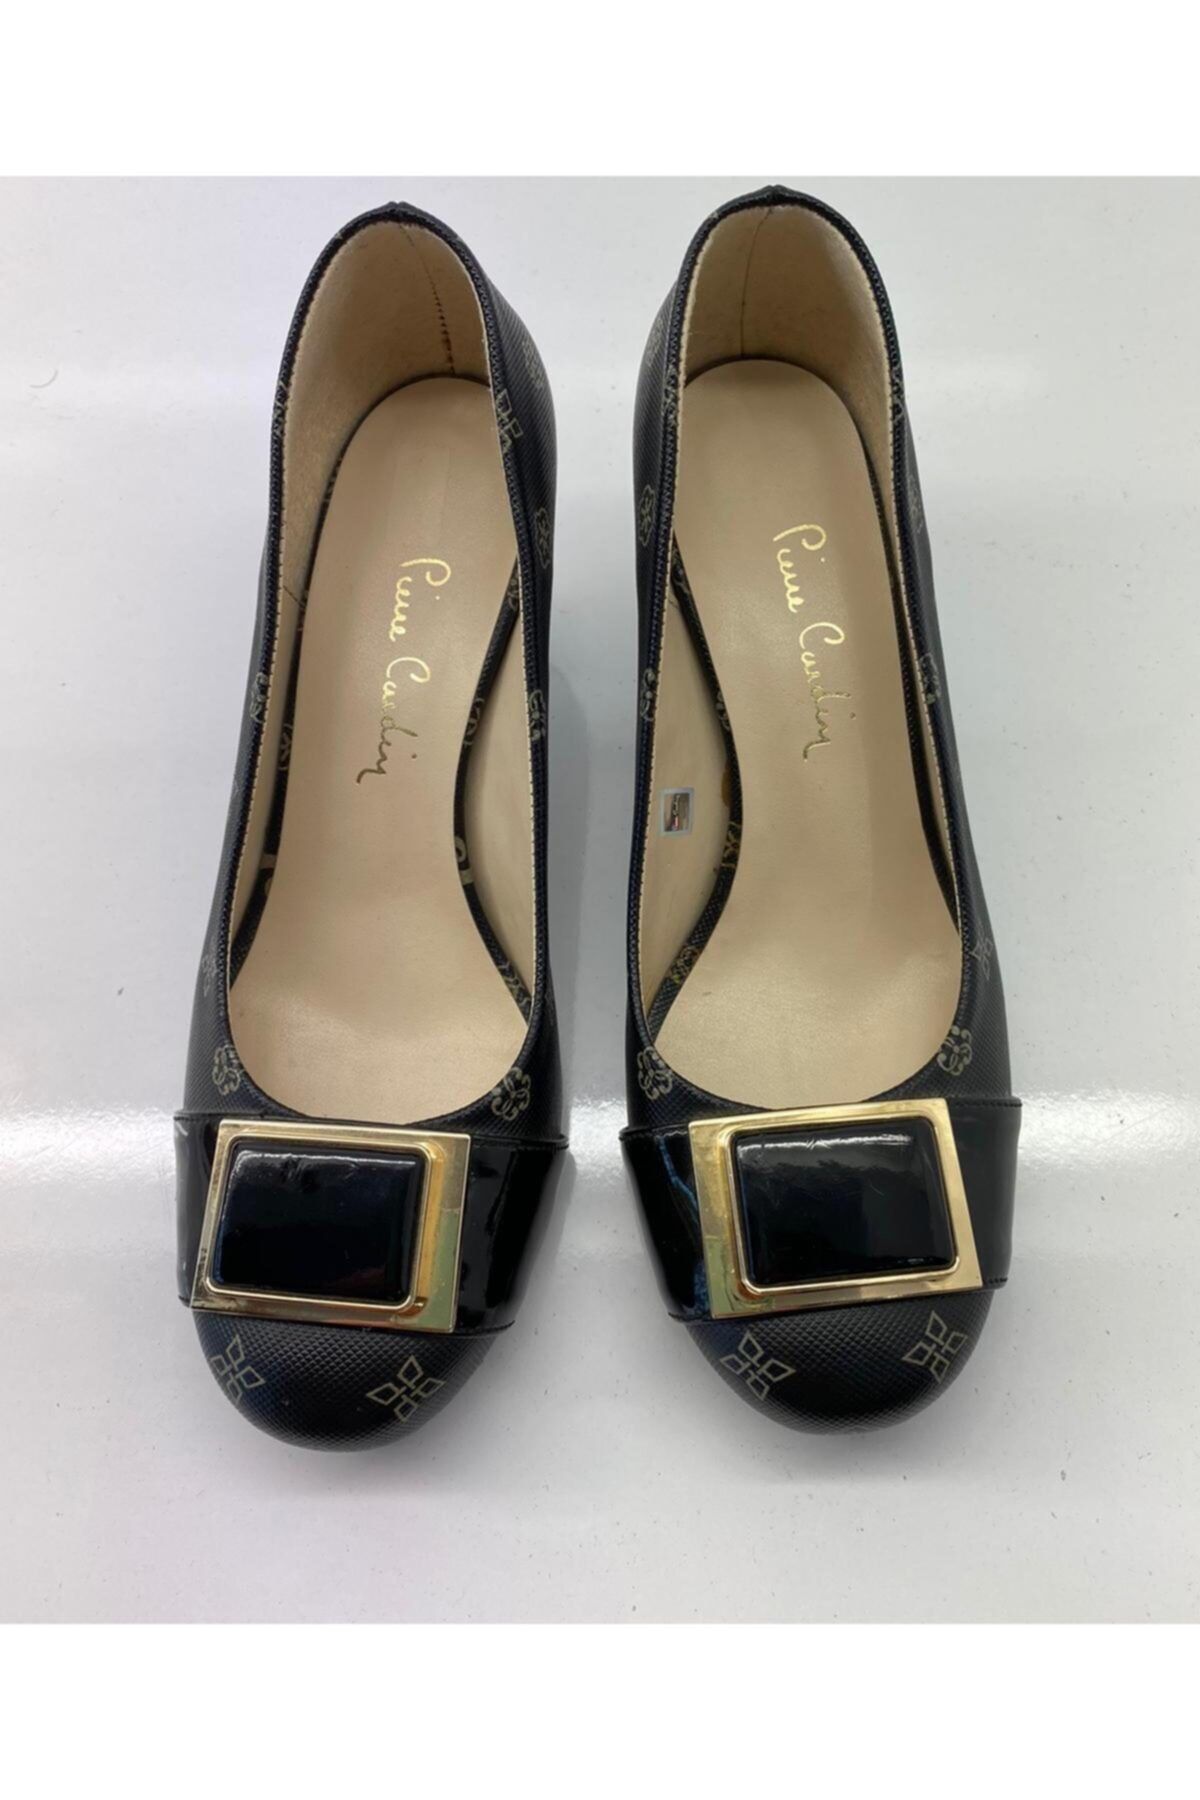 Pierre Cardin Kadın Siyah Günlük Hakiki Deri Topuklu Ayakkabı 1711500